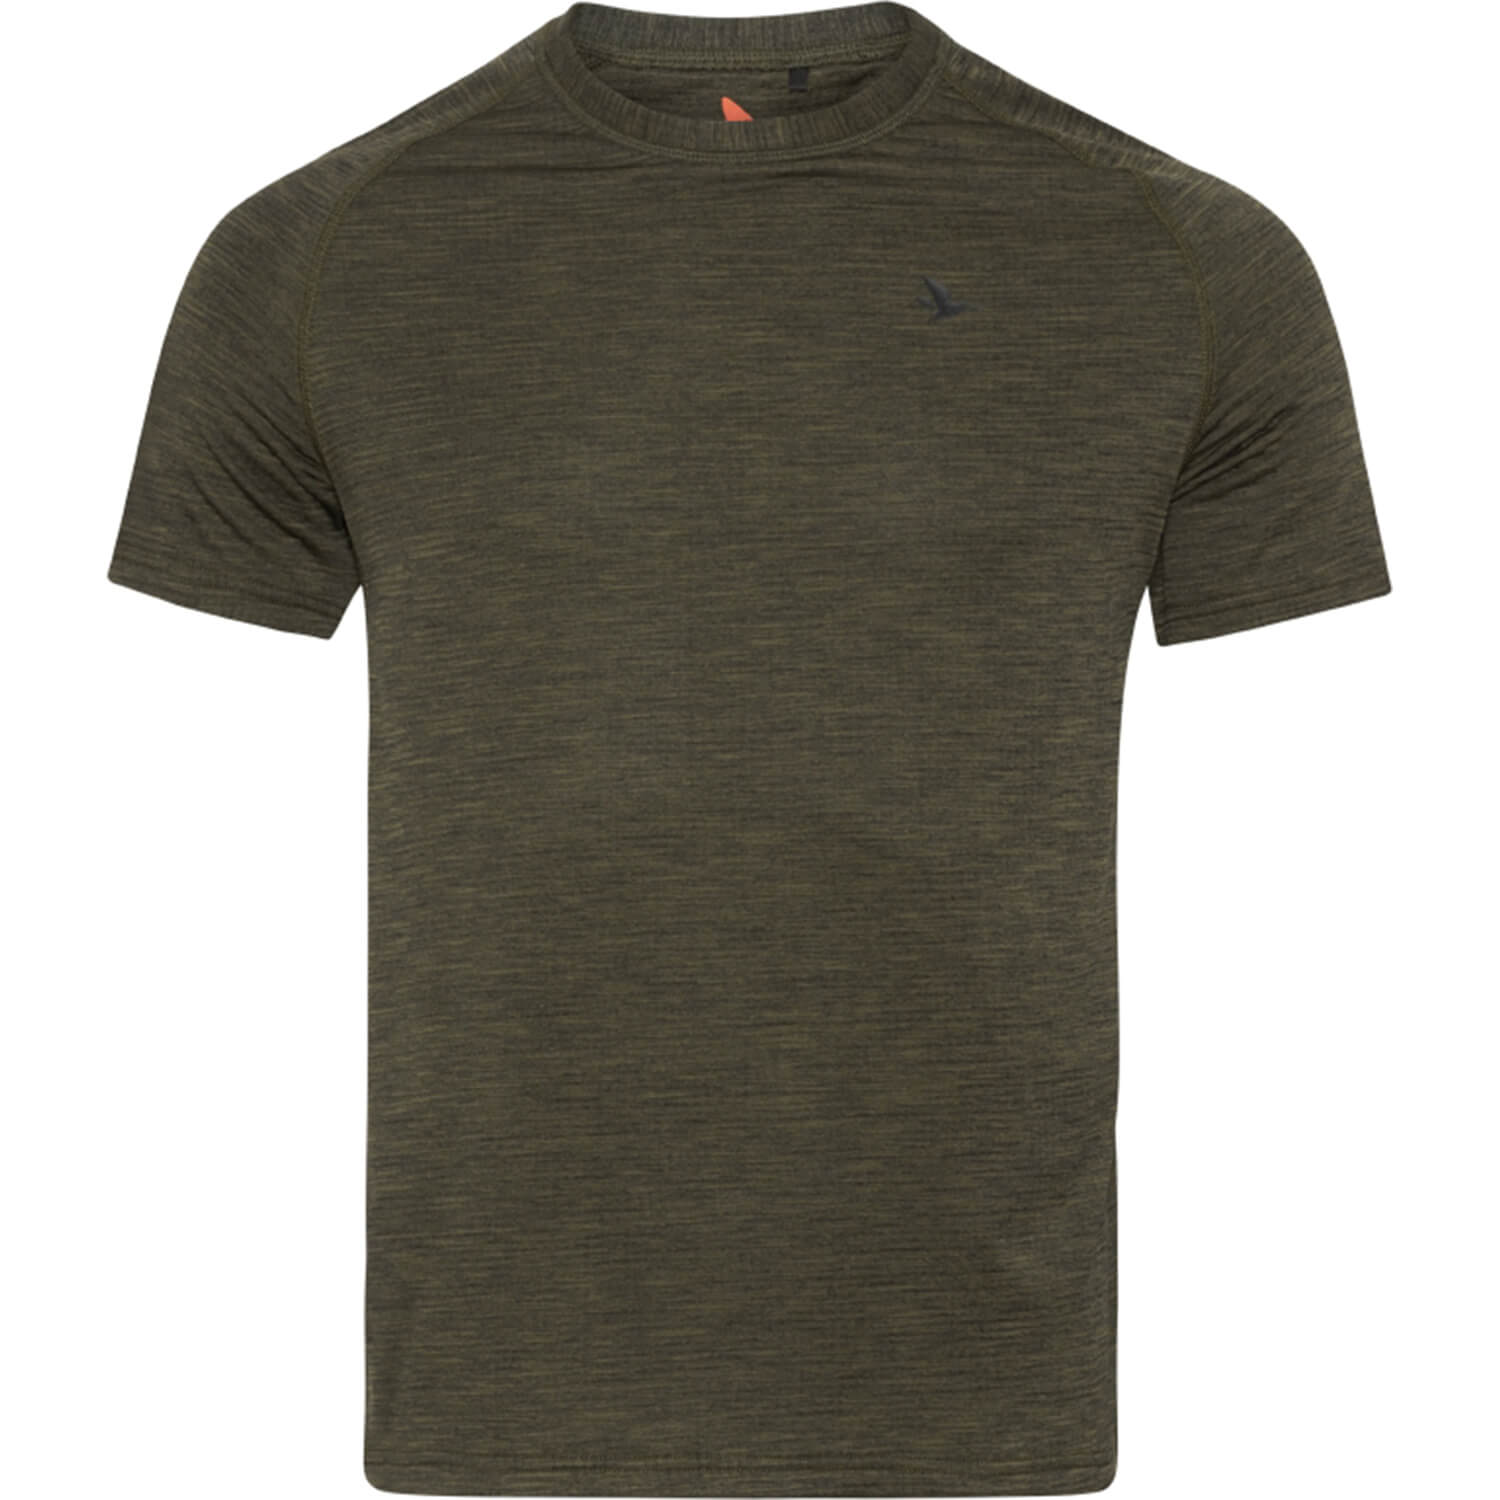  Seeland Active T-shirt - Overhemden & shirts